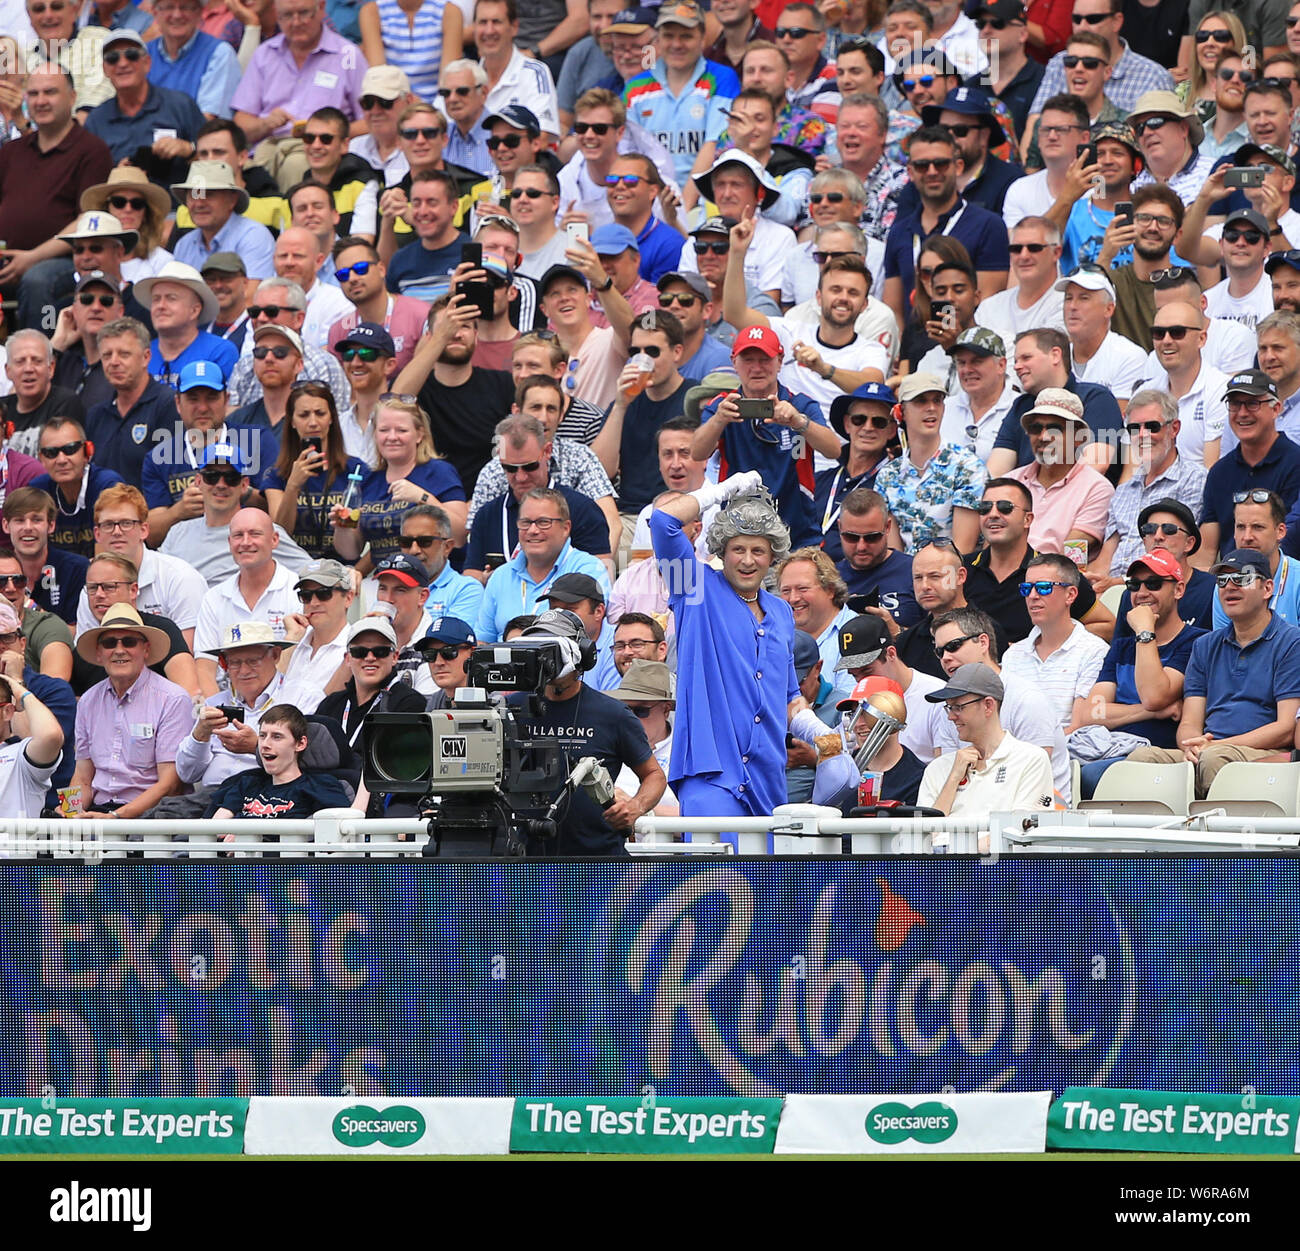 BIRMINGHAM, ENGLAND. 02. AUGUST 2019: ein Ventilator gekleidet wie der Königin mit einem replca des ICC-WM-Trophäe der Masse unterhält während der Tag des Specsavers Asche erste Testspiel bei Edgbaston Cricket Ground, Birmingham. Stockfoto